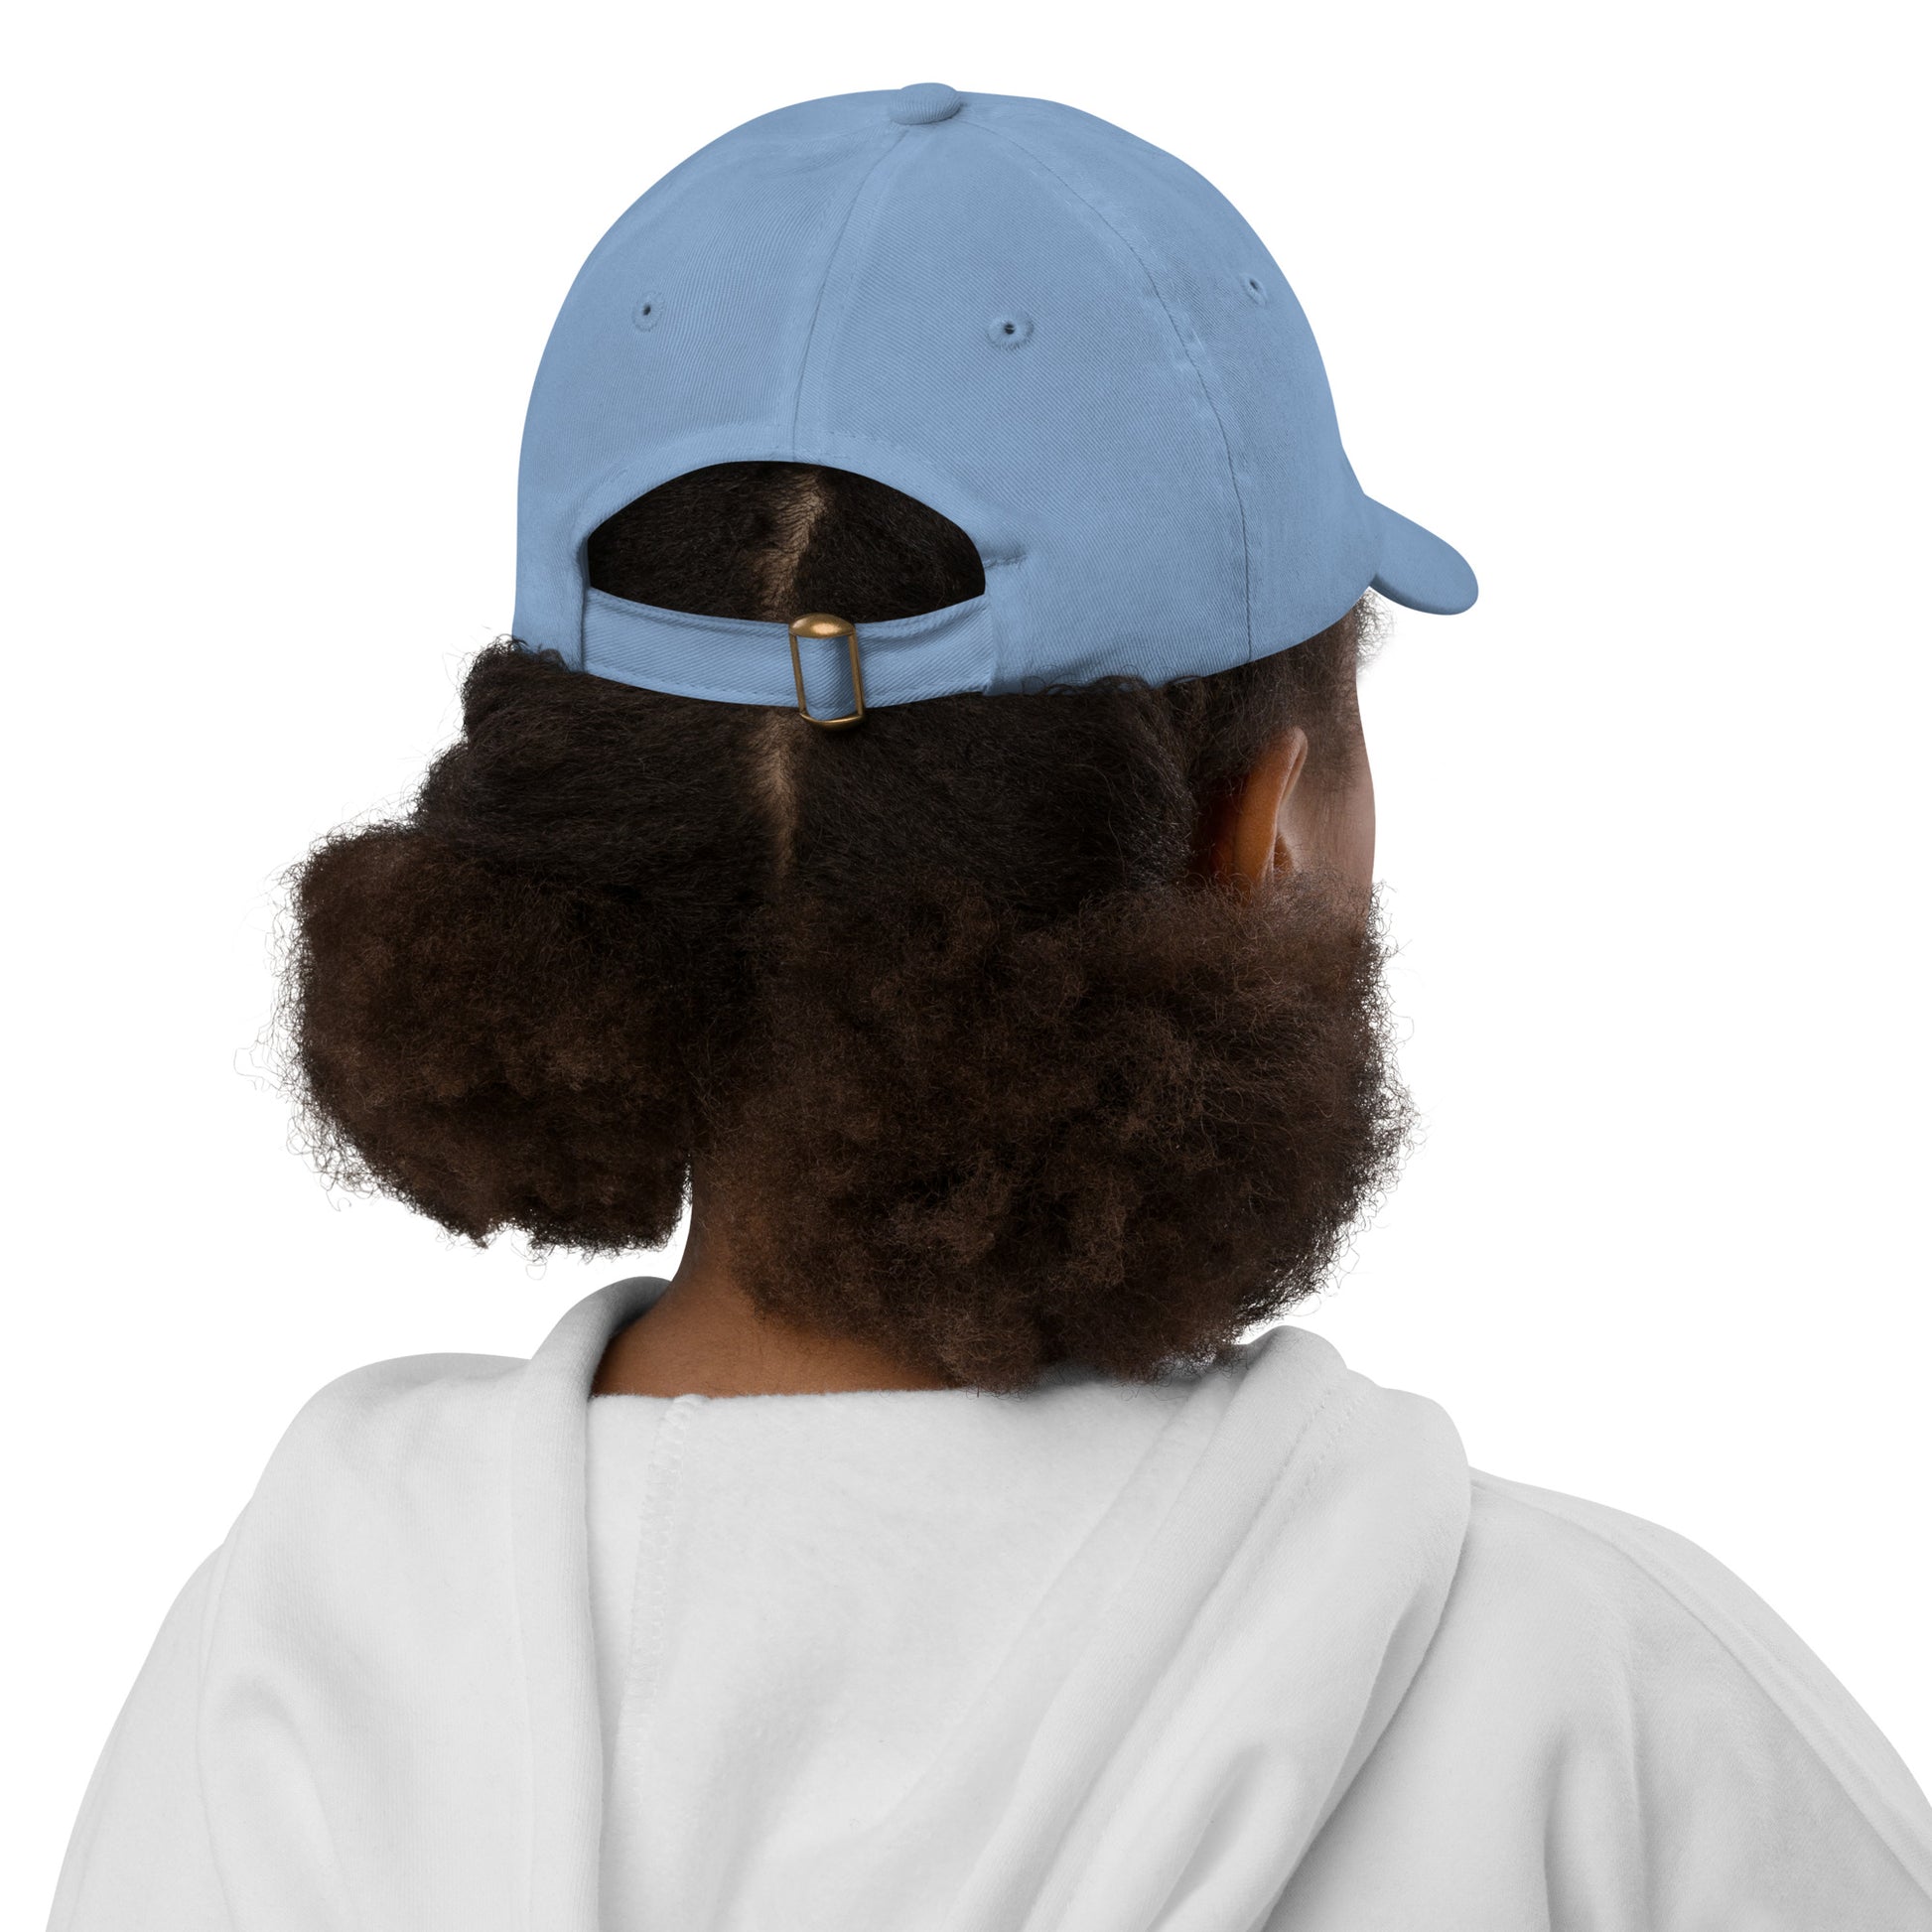 Groovy Kid's Baseball Cap - White • YYT St. John's • YHM Designs - Image 07